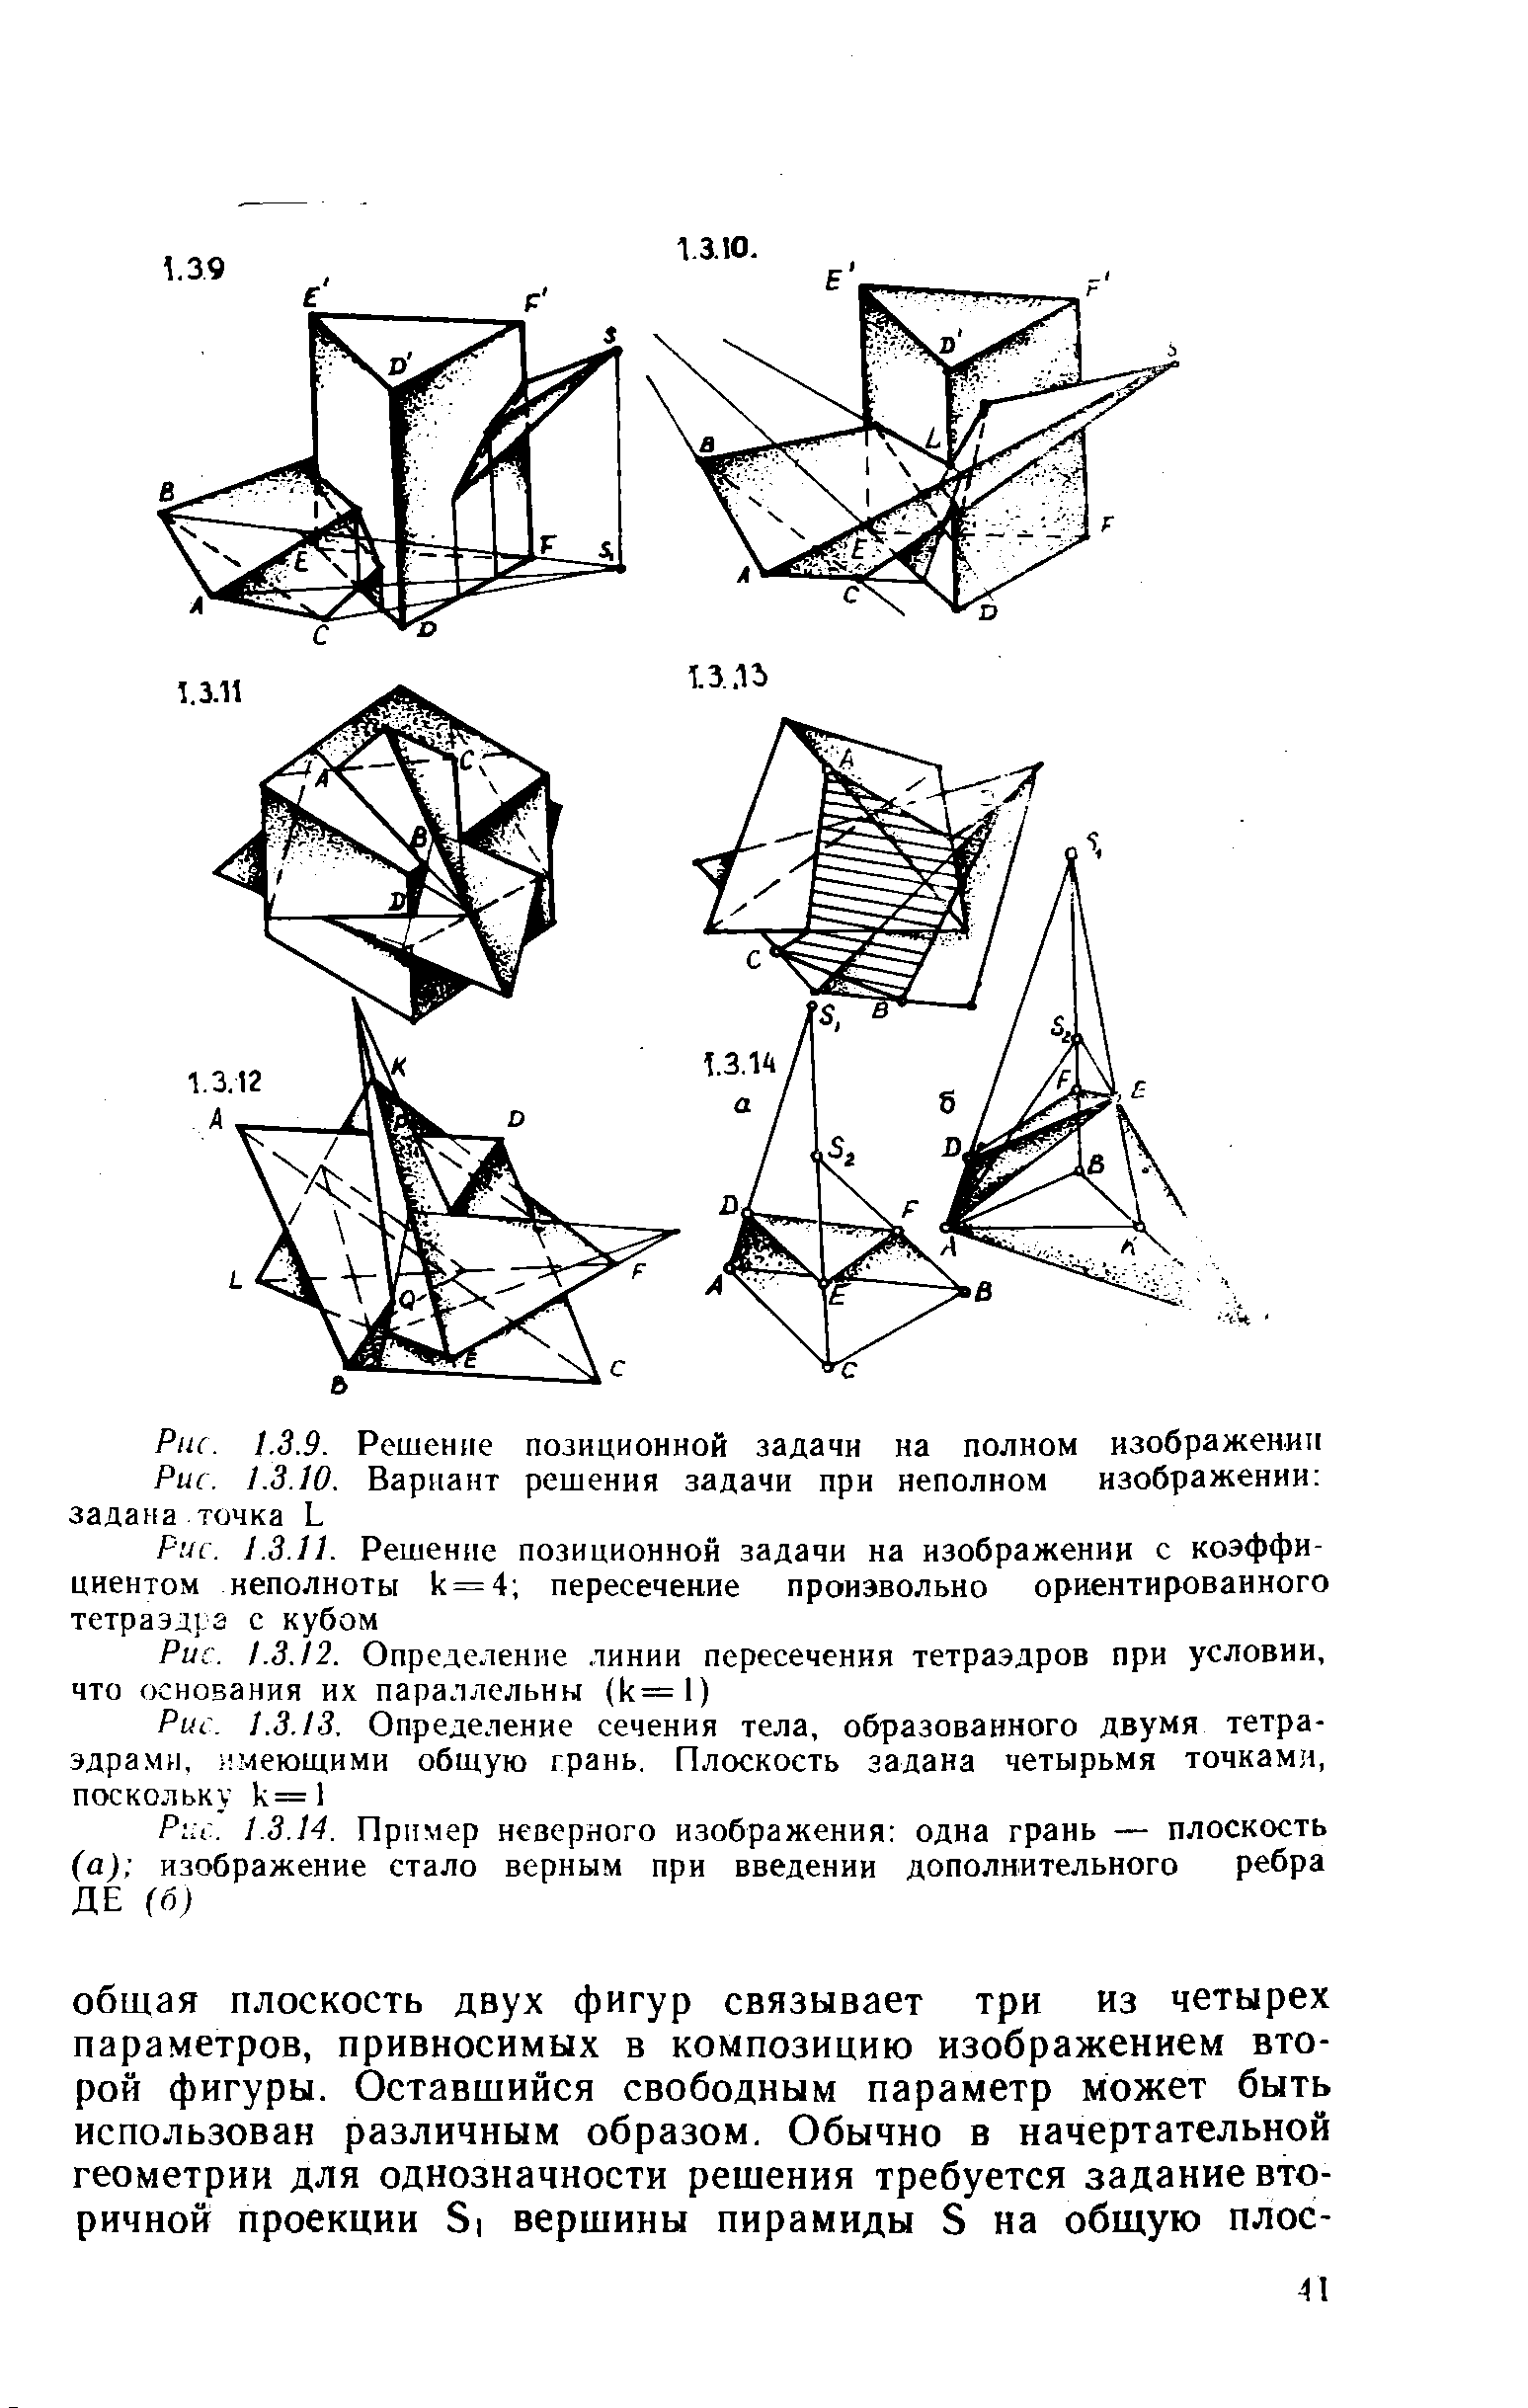 Рис. 1.3.11. Решение <a href="/info/28420">позиционной задачи</a> на изображении с коэффициентом неполноты к = 4 пересечение произвольно ориентированного тетраэдра с кубом
